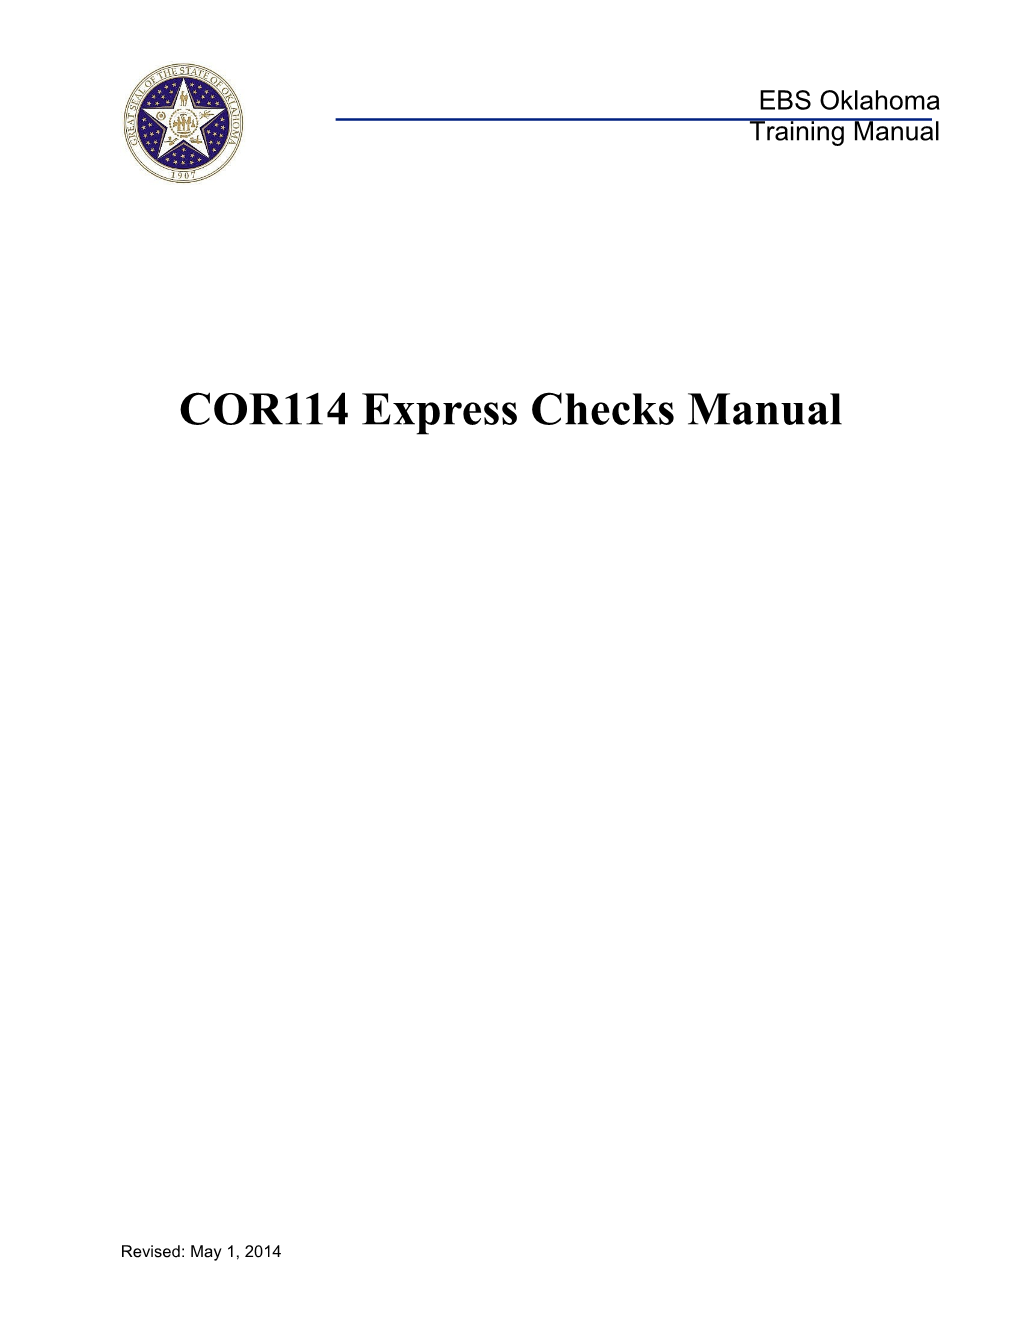 COR114 Express Checks Manual